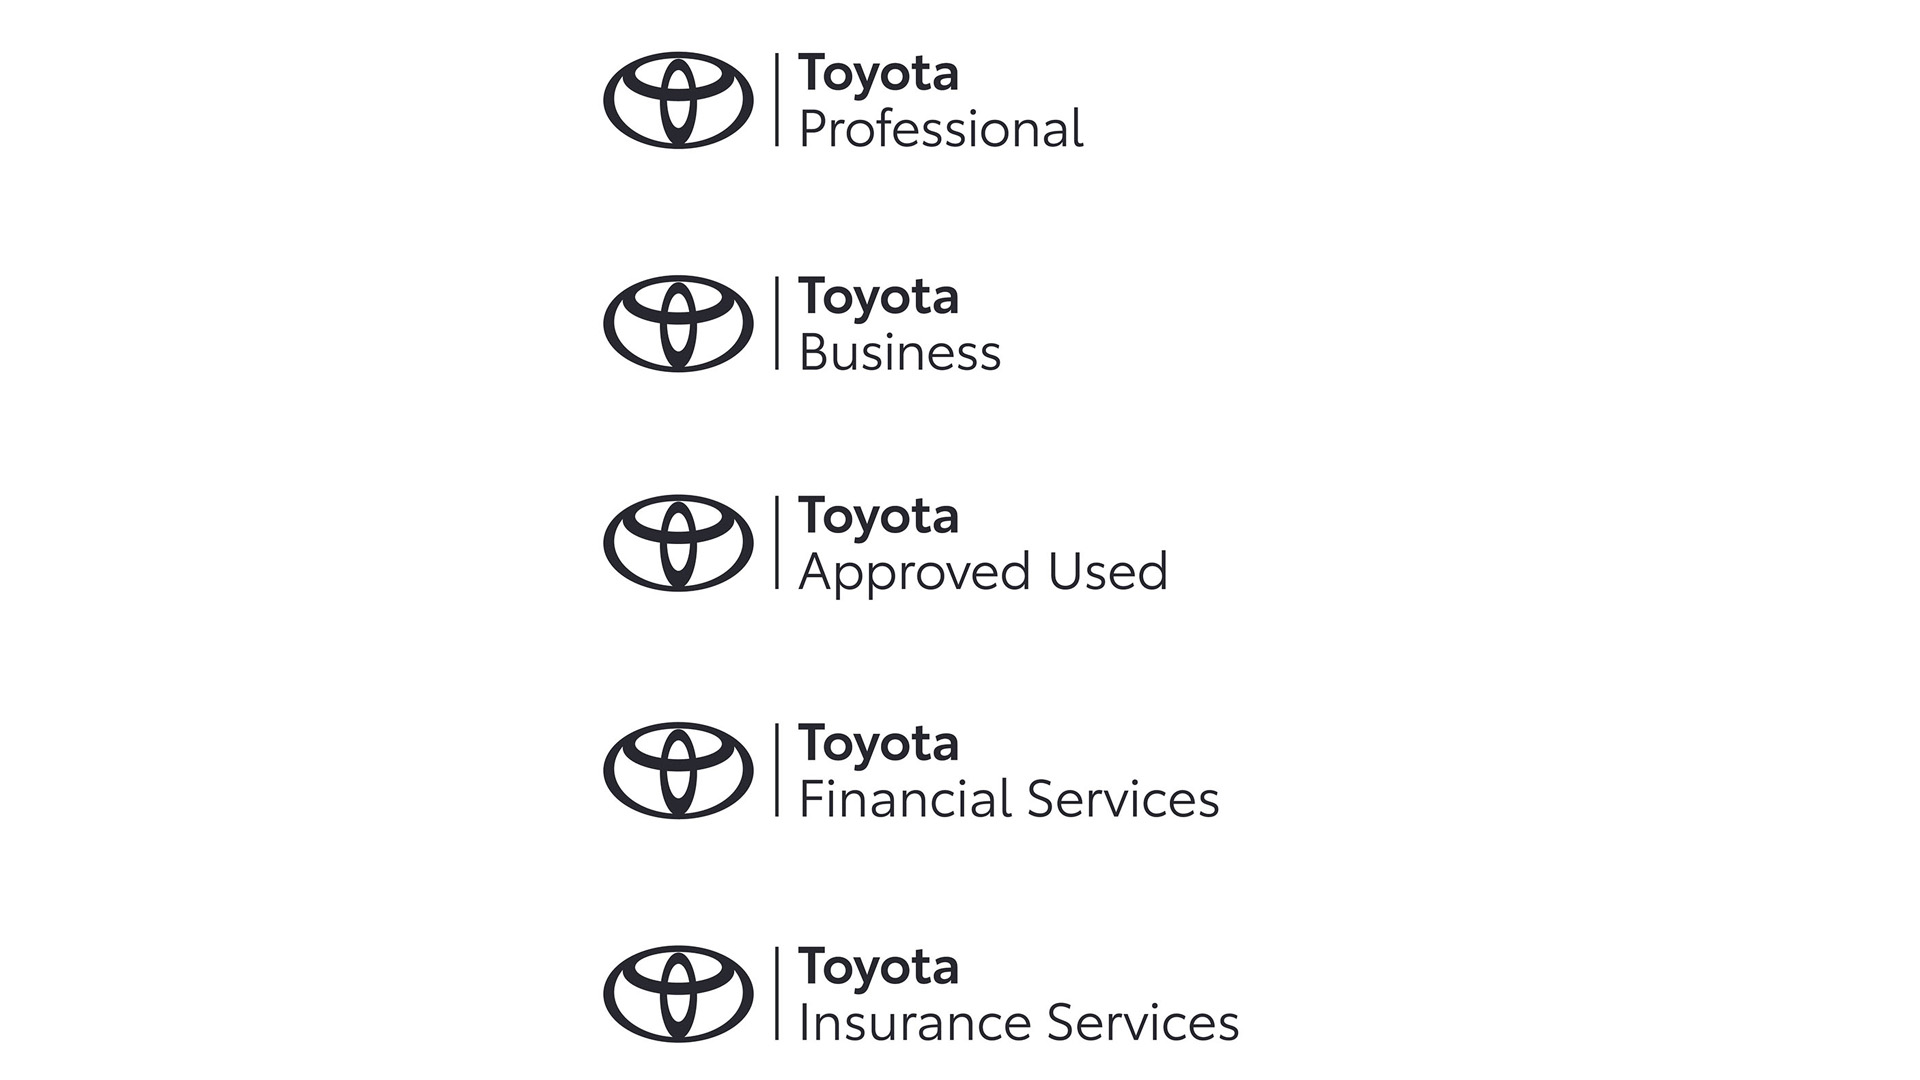 Toyota predstavlja novi dizajn marke u cjelokupnoj svojoj komunikaciji